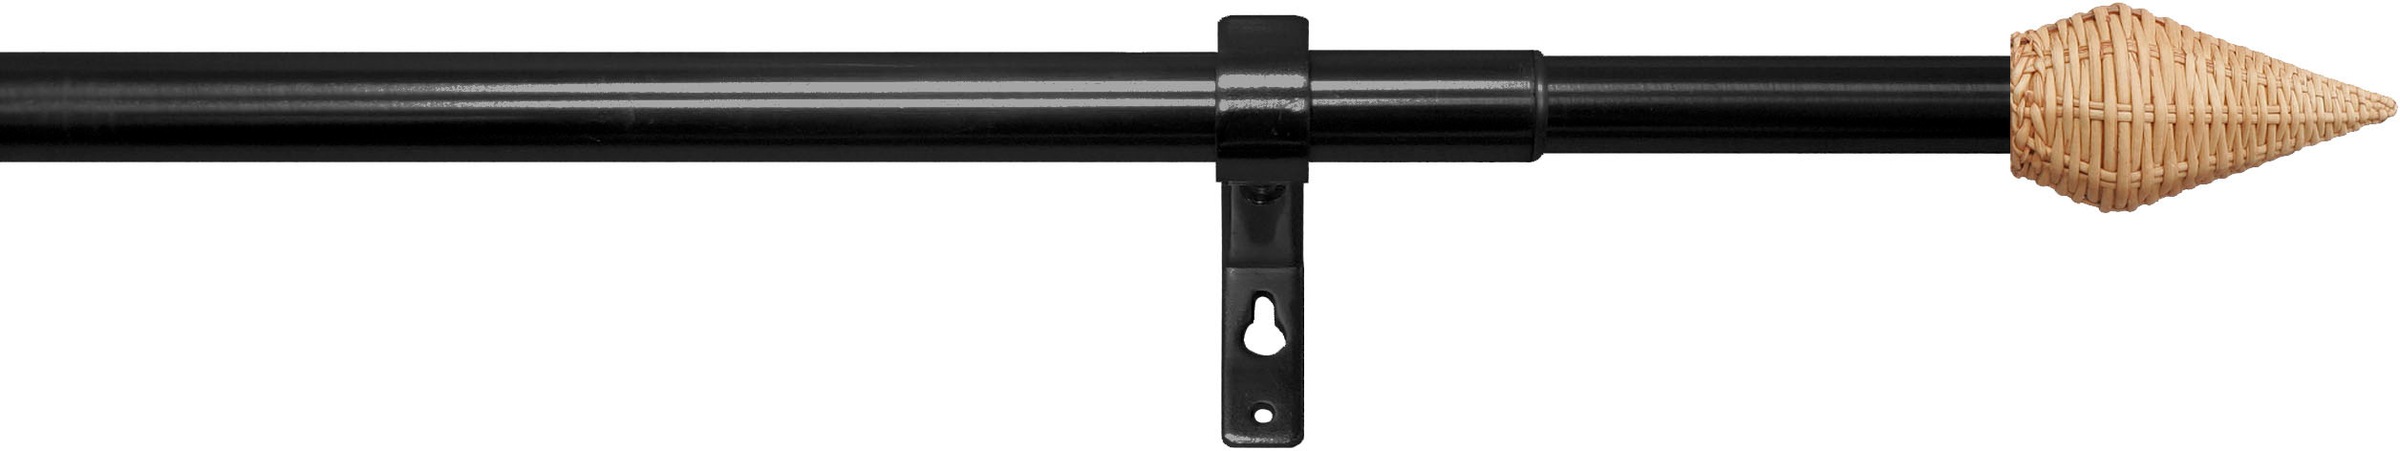 Ø13/16mm«, indeko läufig-läufig, Teleskopstange »Rattan im ausziehbar, 1 OTTO-Shop Gardinenstange stufenlos verstellbare